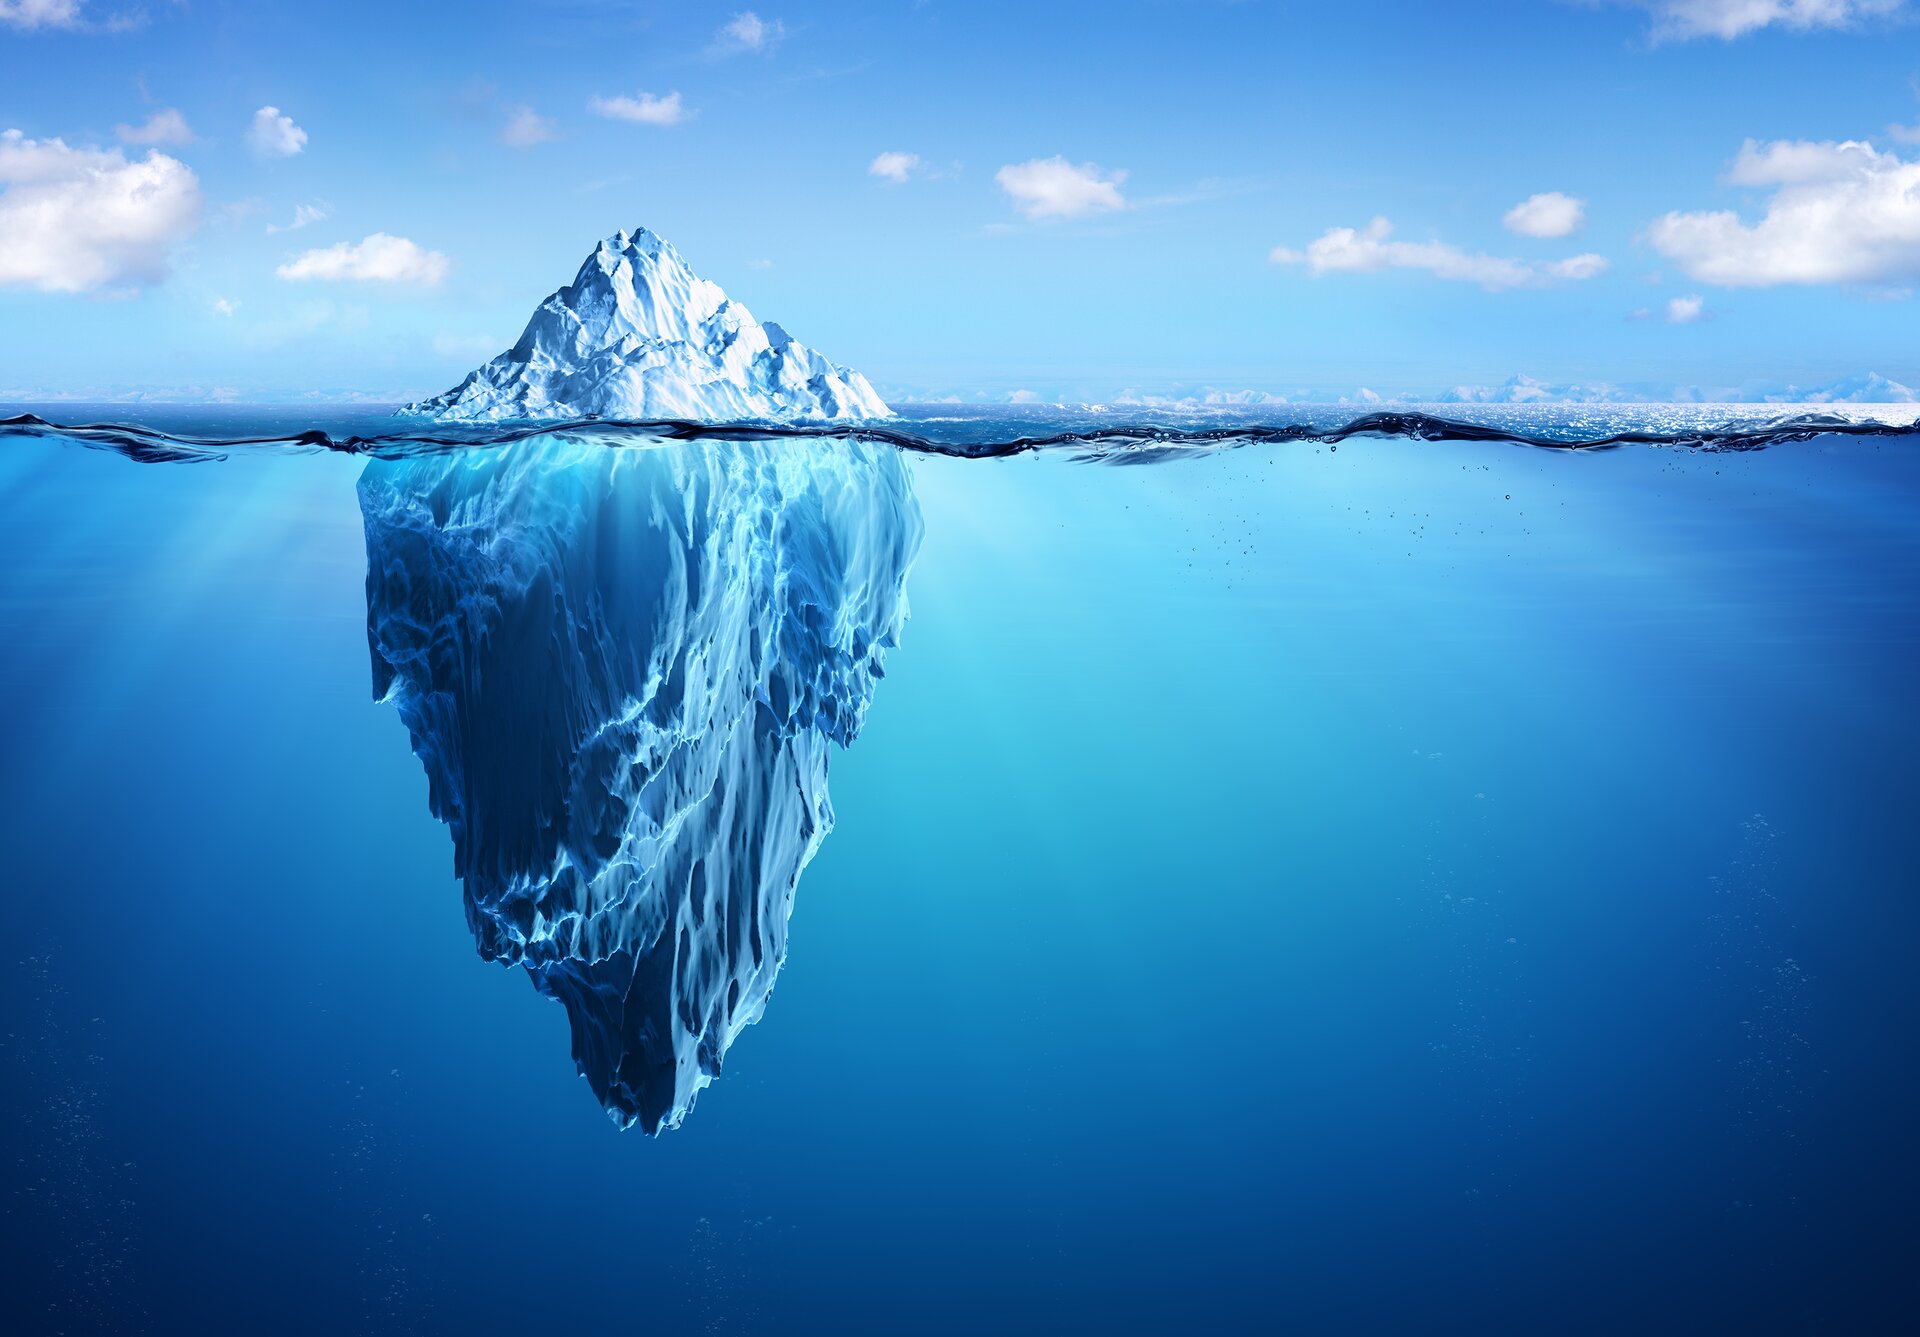 Rys. a. Ilustracja pokazuje górę lodową zanurzoną w morzu. Widoczna jest cała część podwodna, która jest znacznie większa niż część znajdująca się nad powierzchnią wody. 